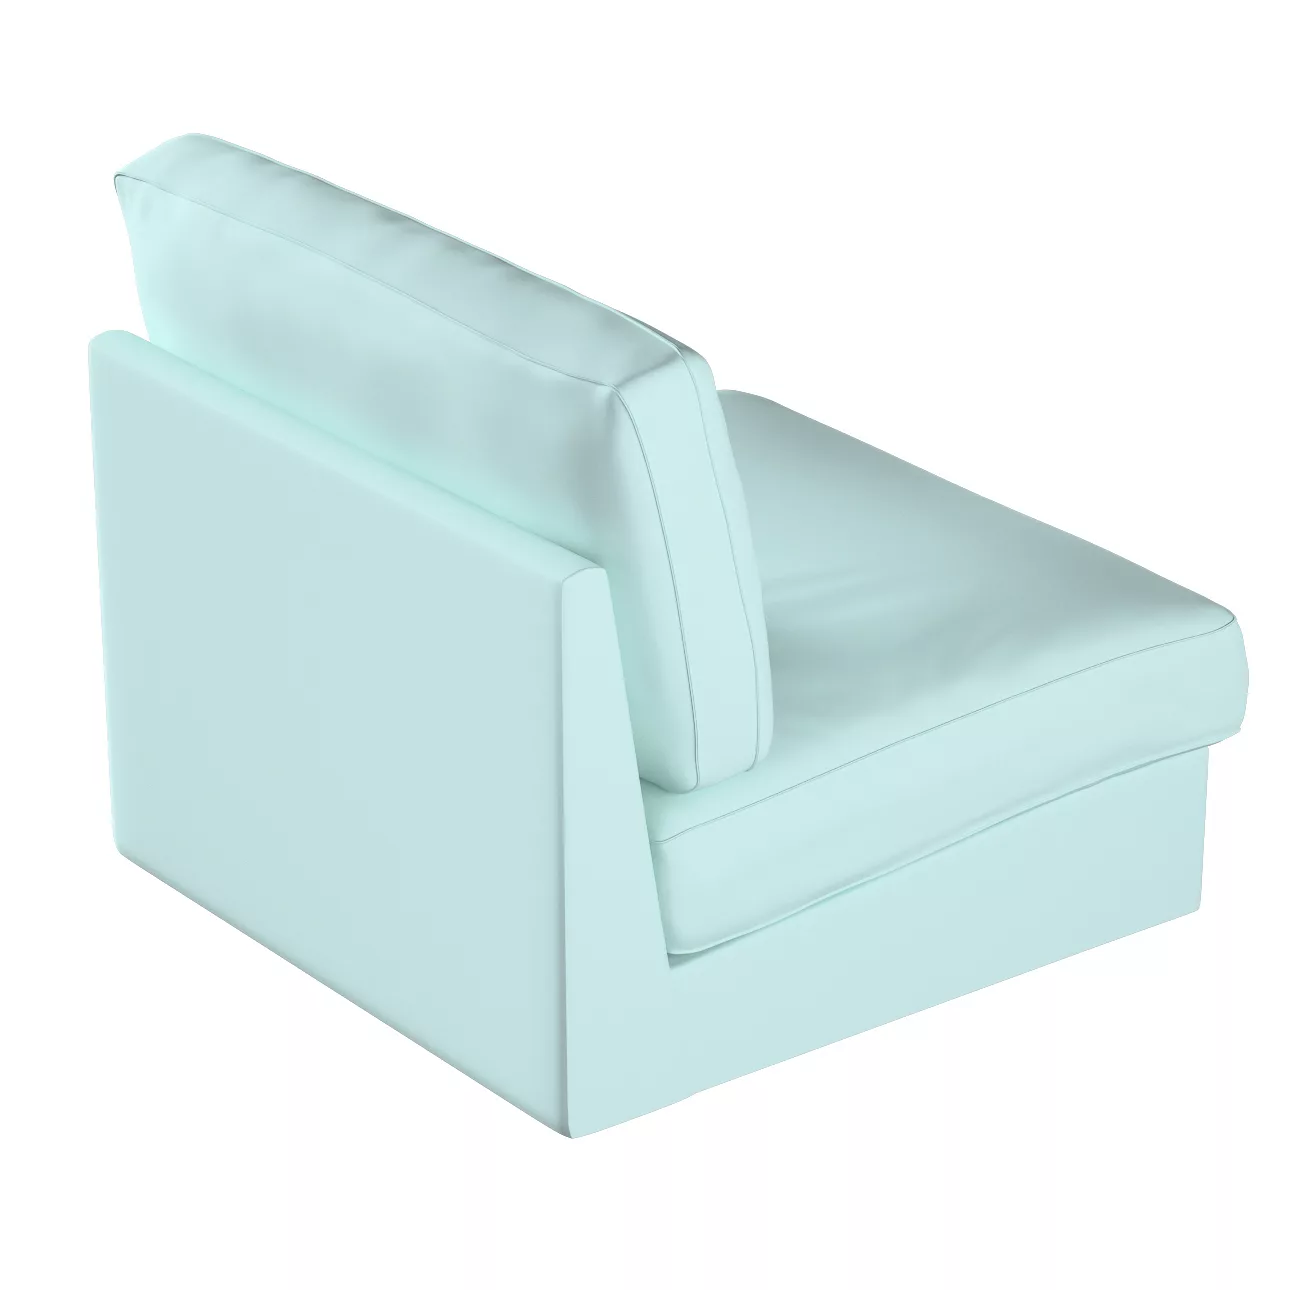 Bezug für Kivik Sessel nicht ausklappbar, hellblau, Bezug für Sessel Kivik, günstig online kaufen